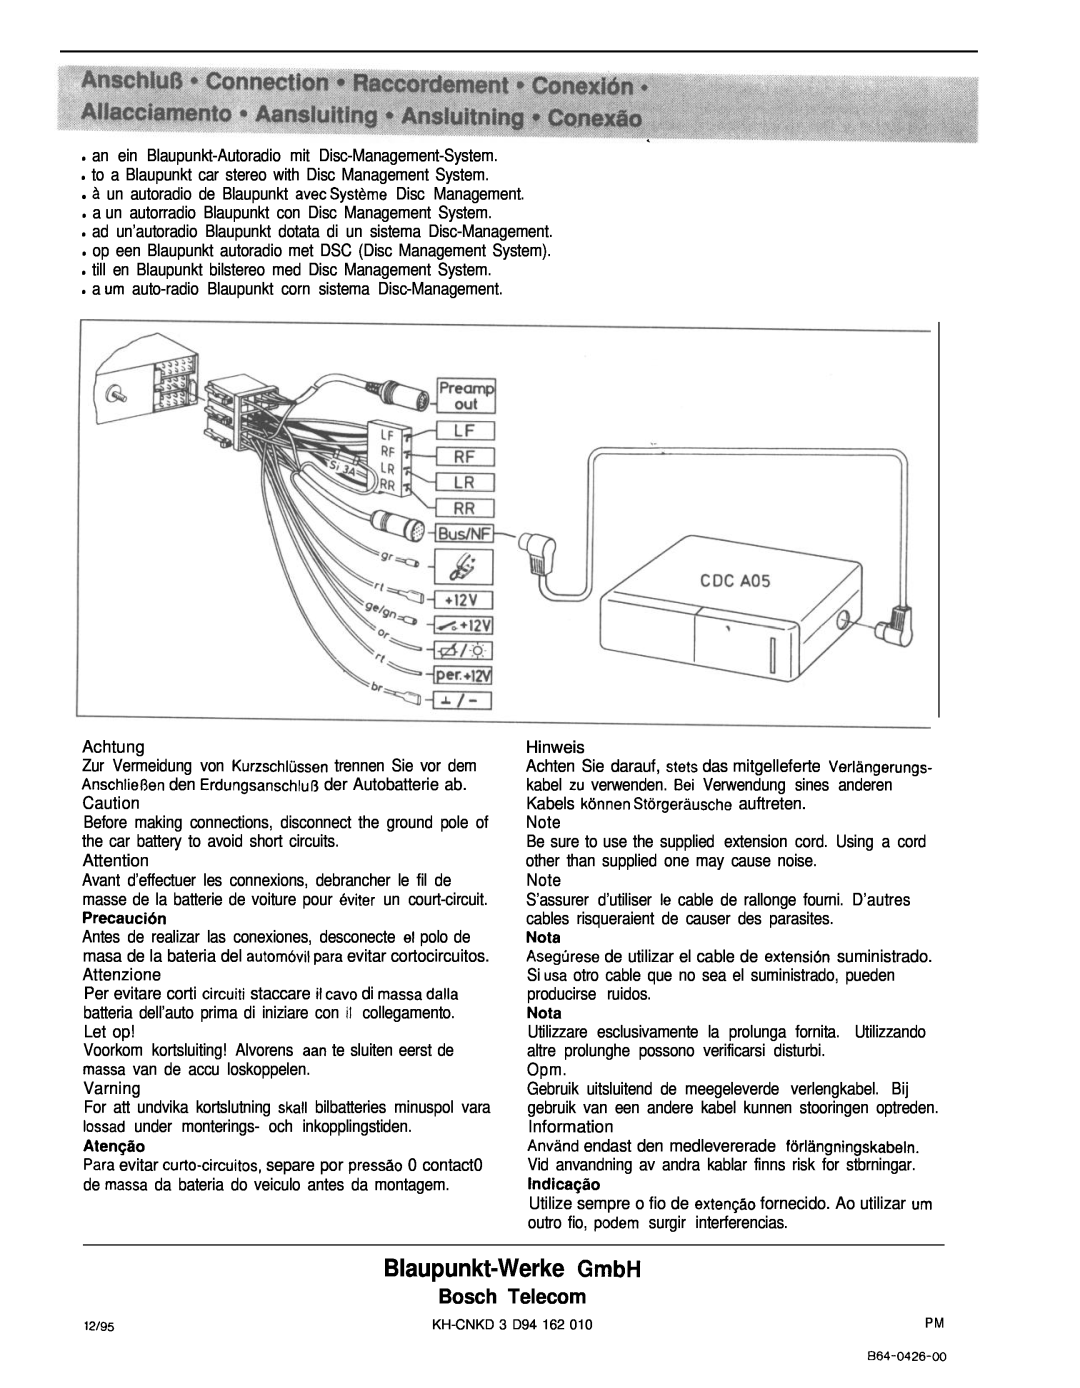 Blaupunkt A 05 manual Blaupunkt-WerkeGmbH, Bosch Telecom 